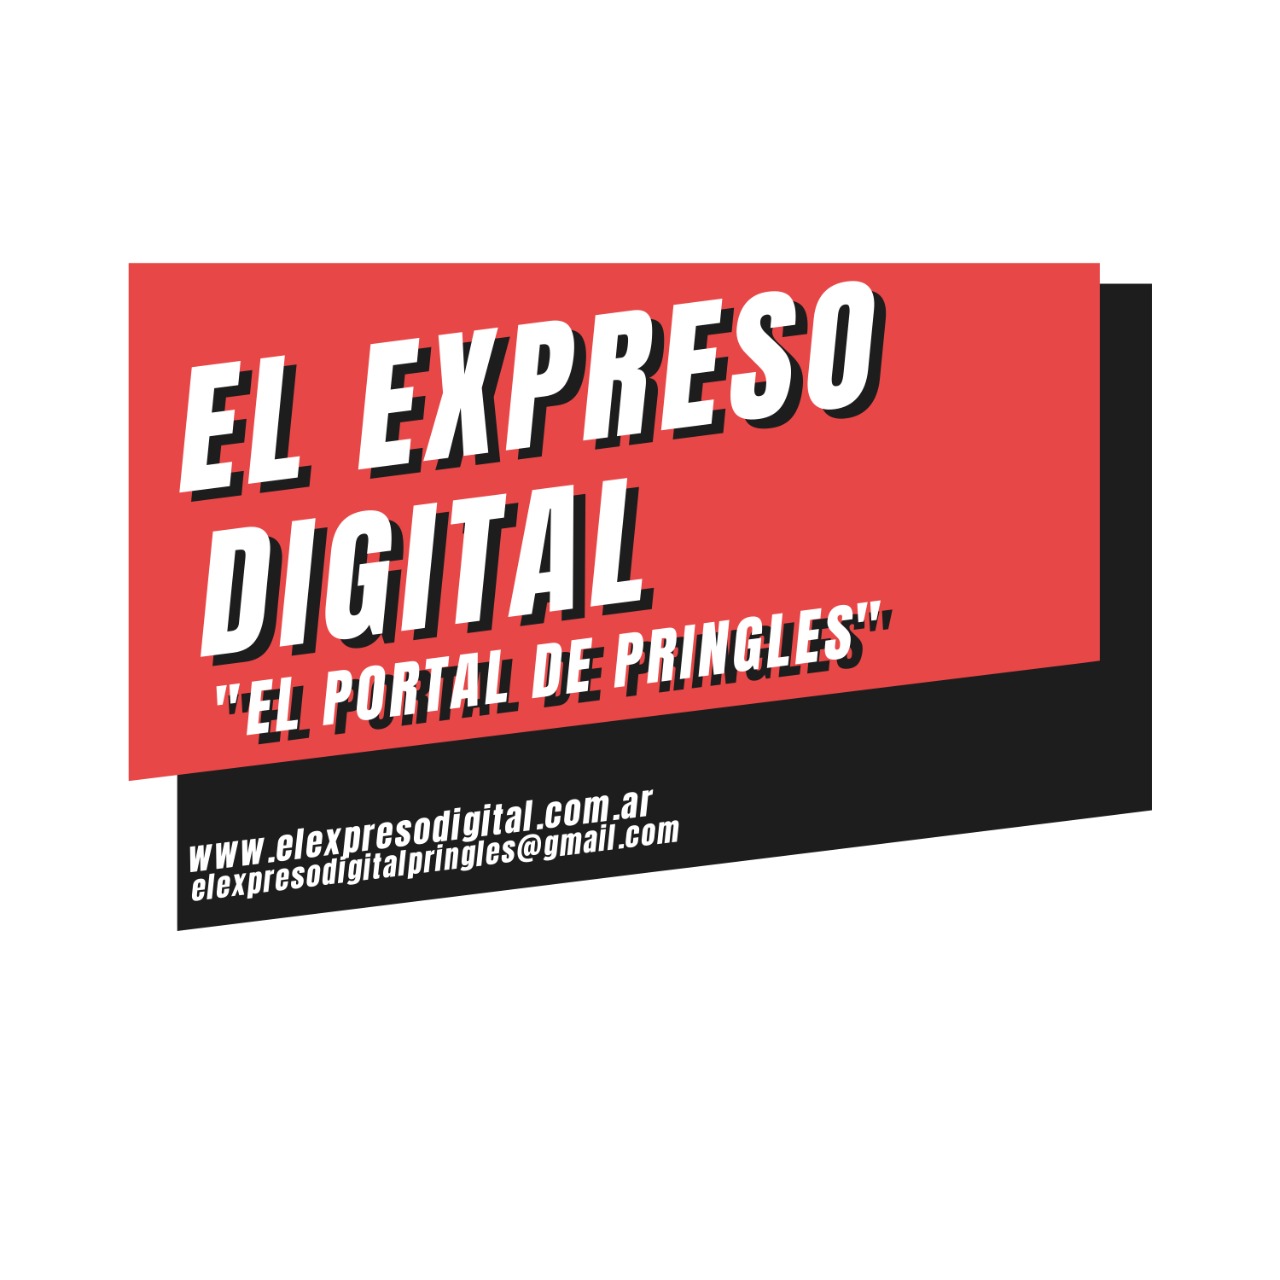 www.elexpresodigital.com.ar